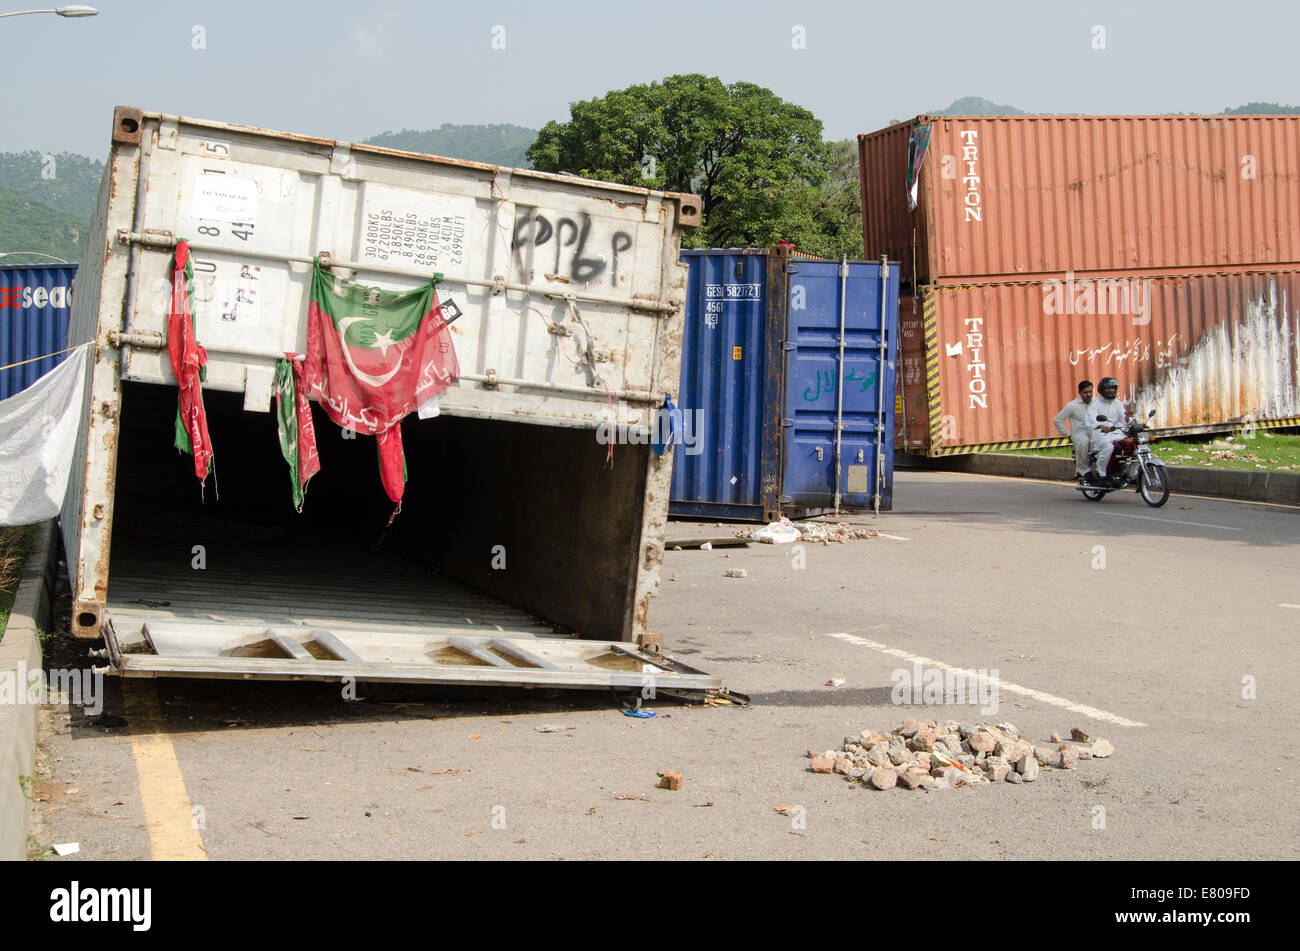 ISLAMABAD, PAKISTAN, 24 septembre 2014 : des conteneurs d'expédition utilisé par des manifestants anti-gouvernement à Islamabad. Banque D'Images